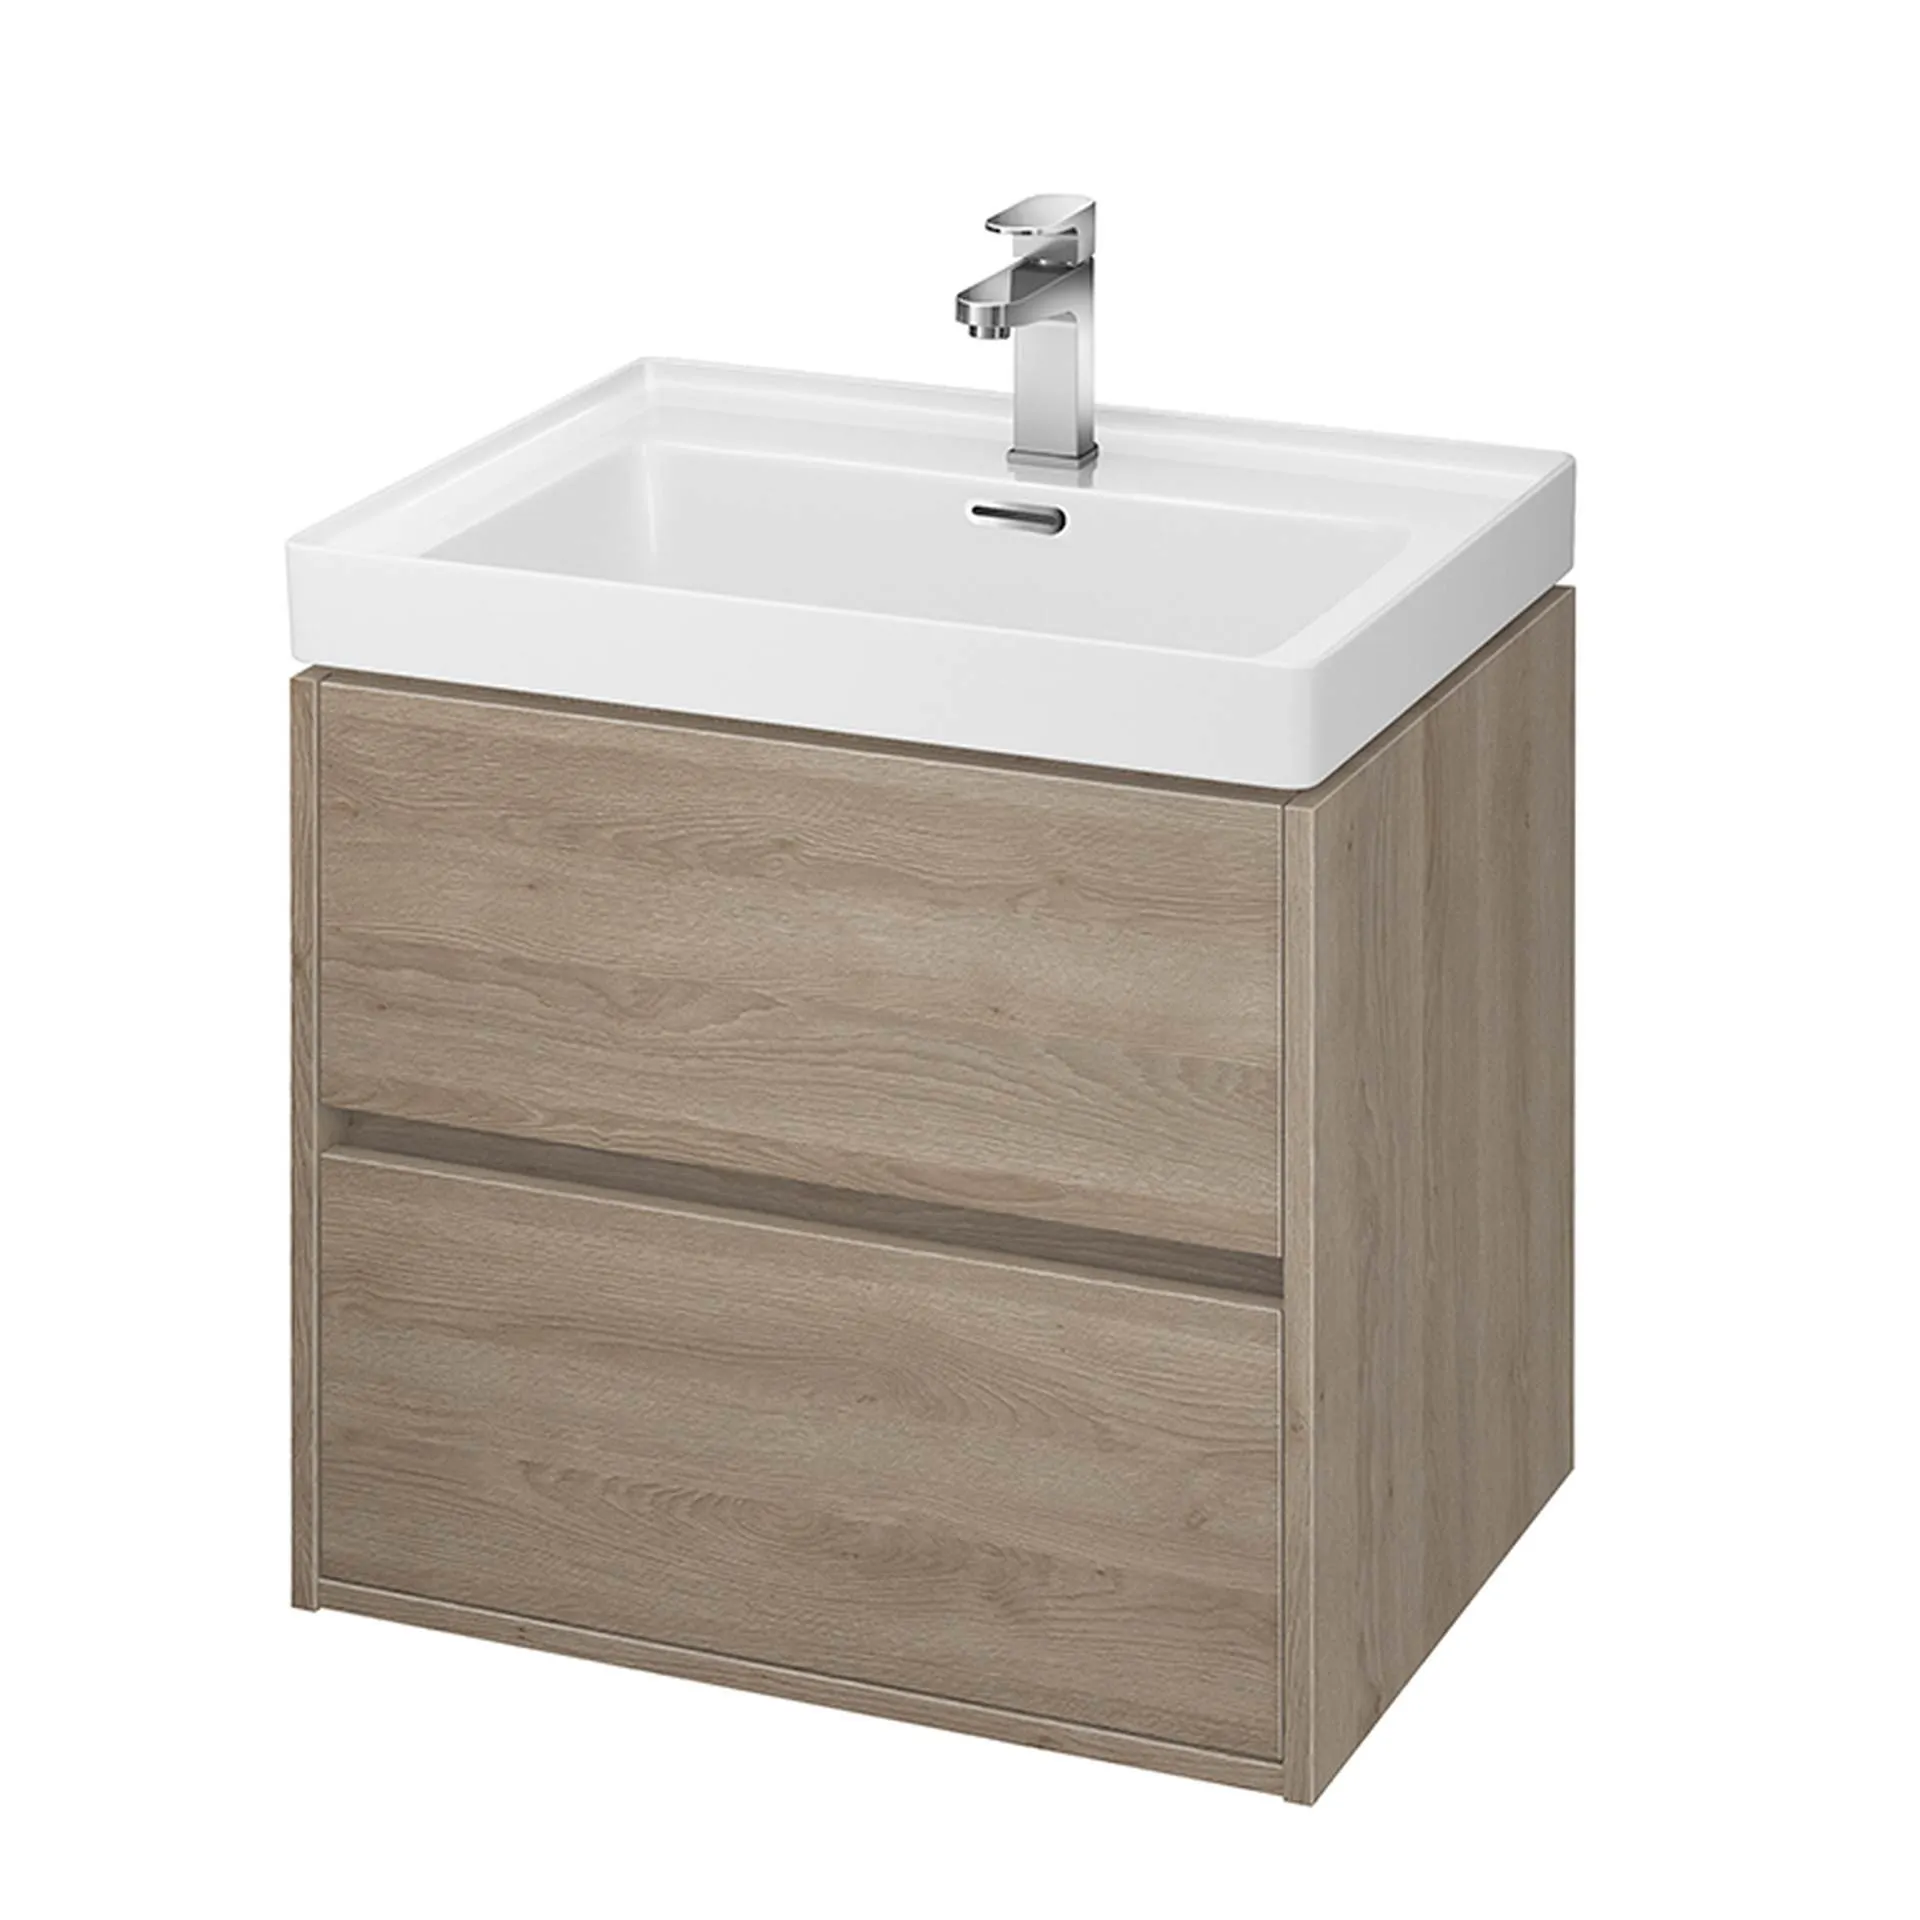 Szafka łazienkowa pod umywalkę Cersanit Crea 60 cm jasne drewno S924-008